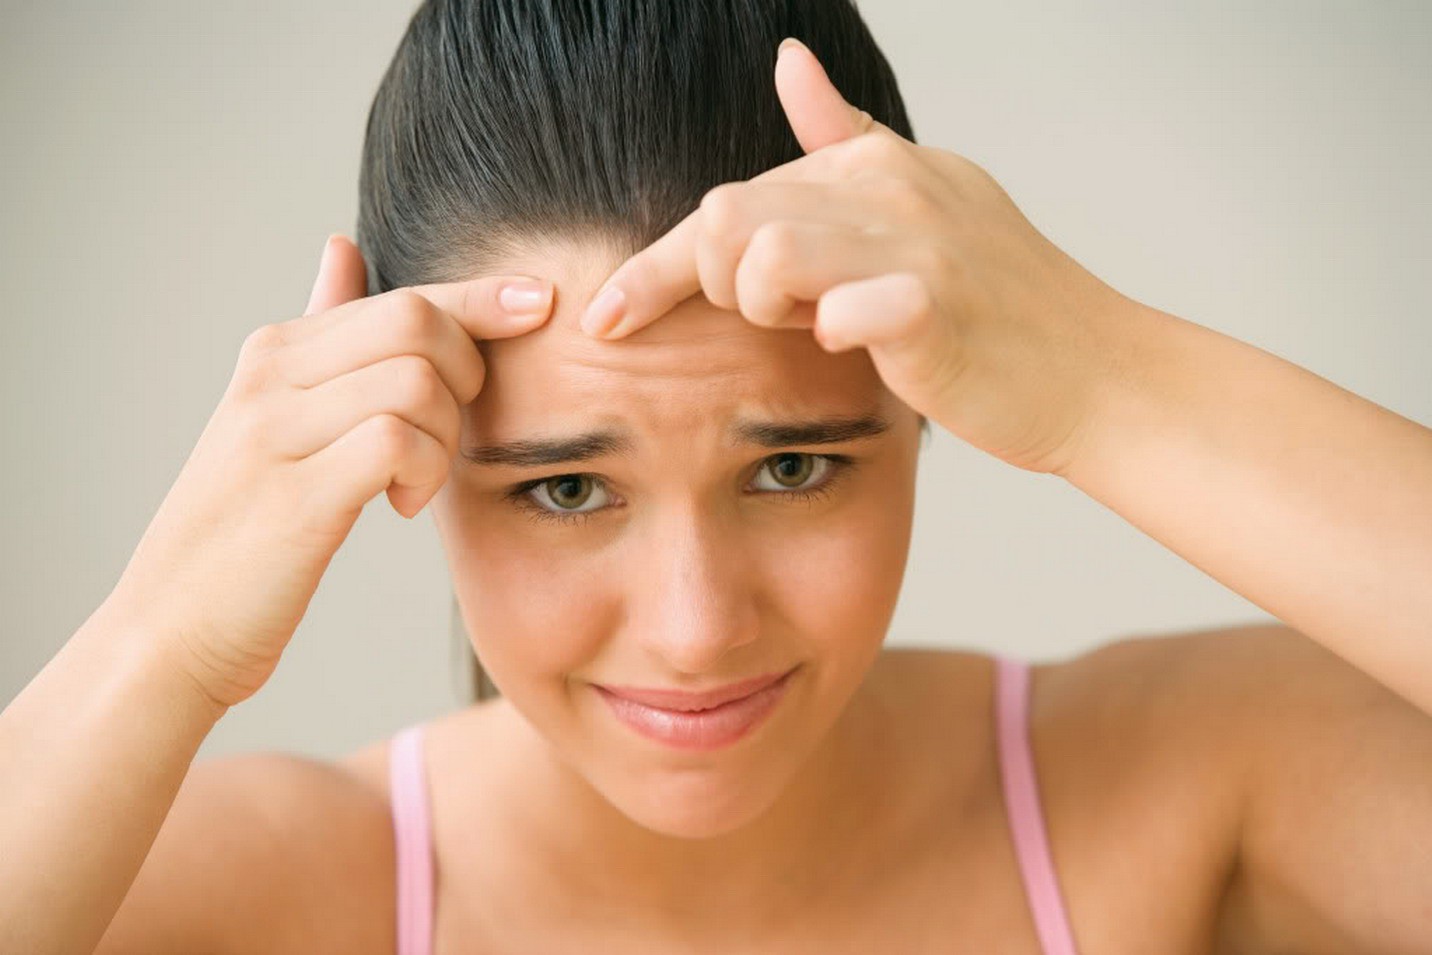 Mọc mụn ở bất kỳ vị trí nào trên khuôn mặt cũng có thể ngầm cảnh báo một vài vấn đề sức khỏe đang xảy ra trong cơ thể bạn - Ảnh 5